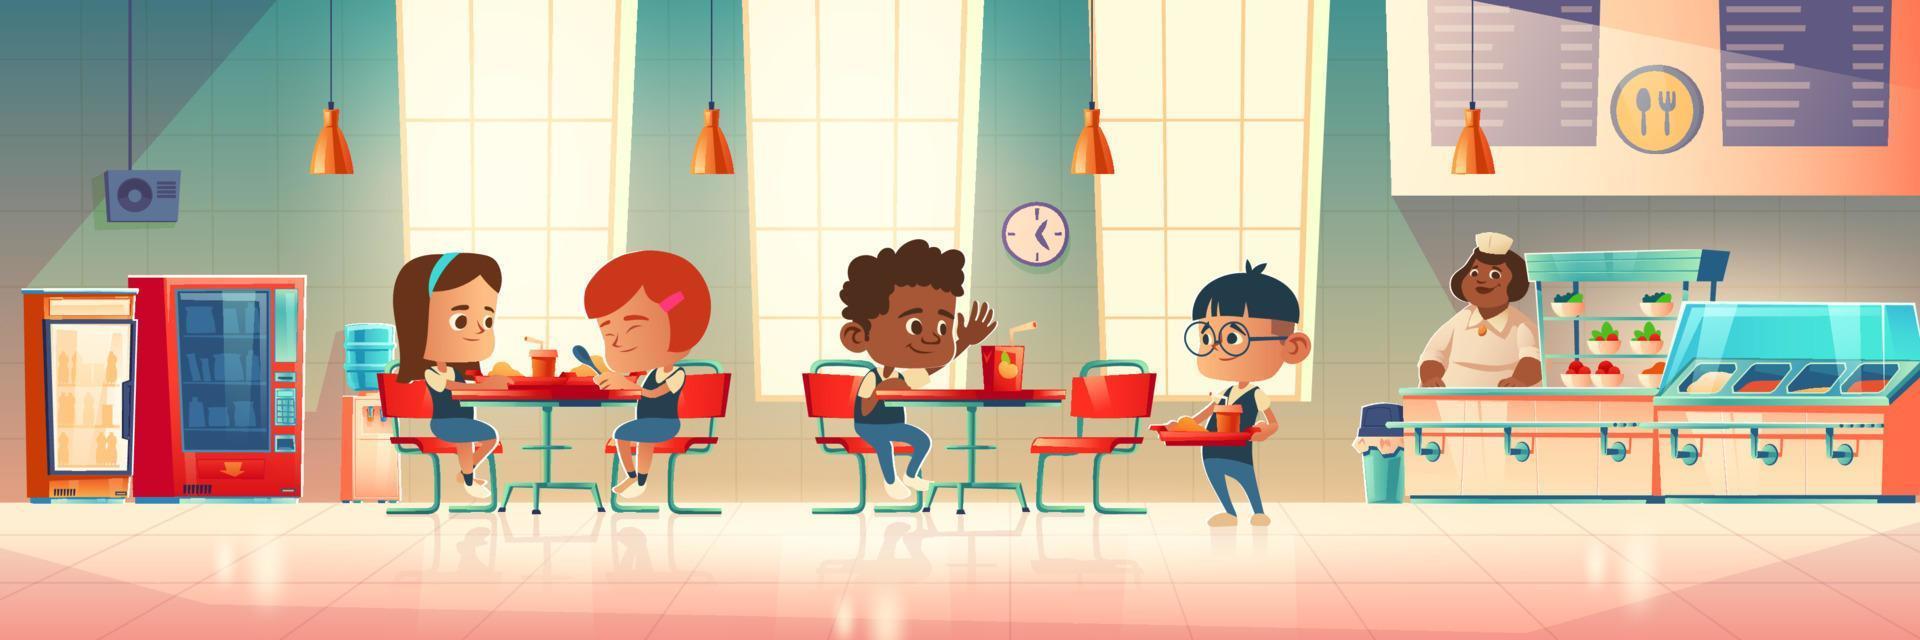 Children eat in school canteen vector